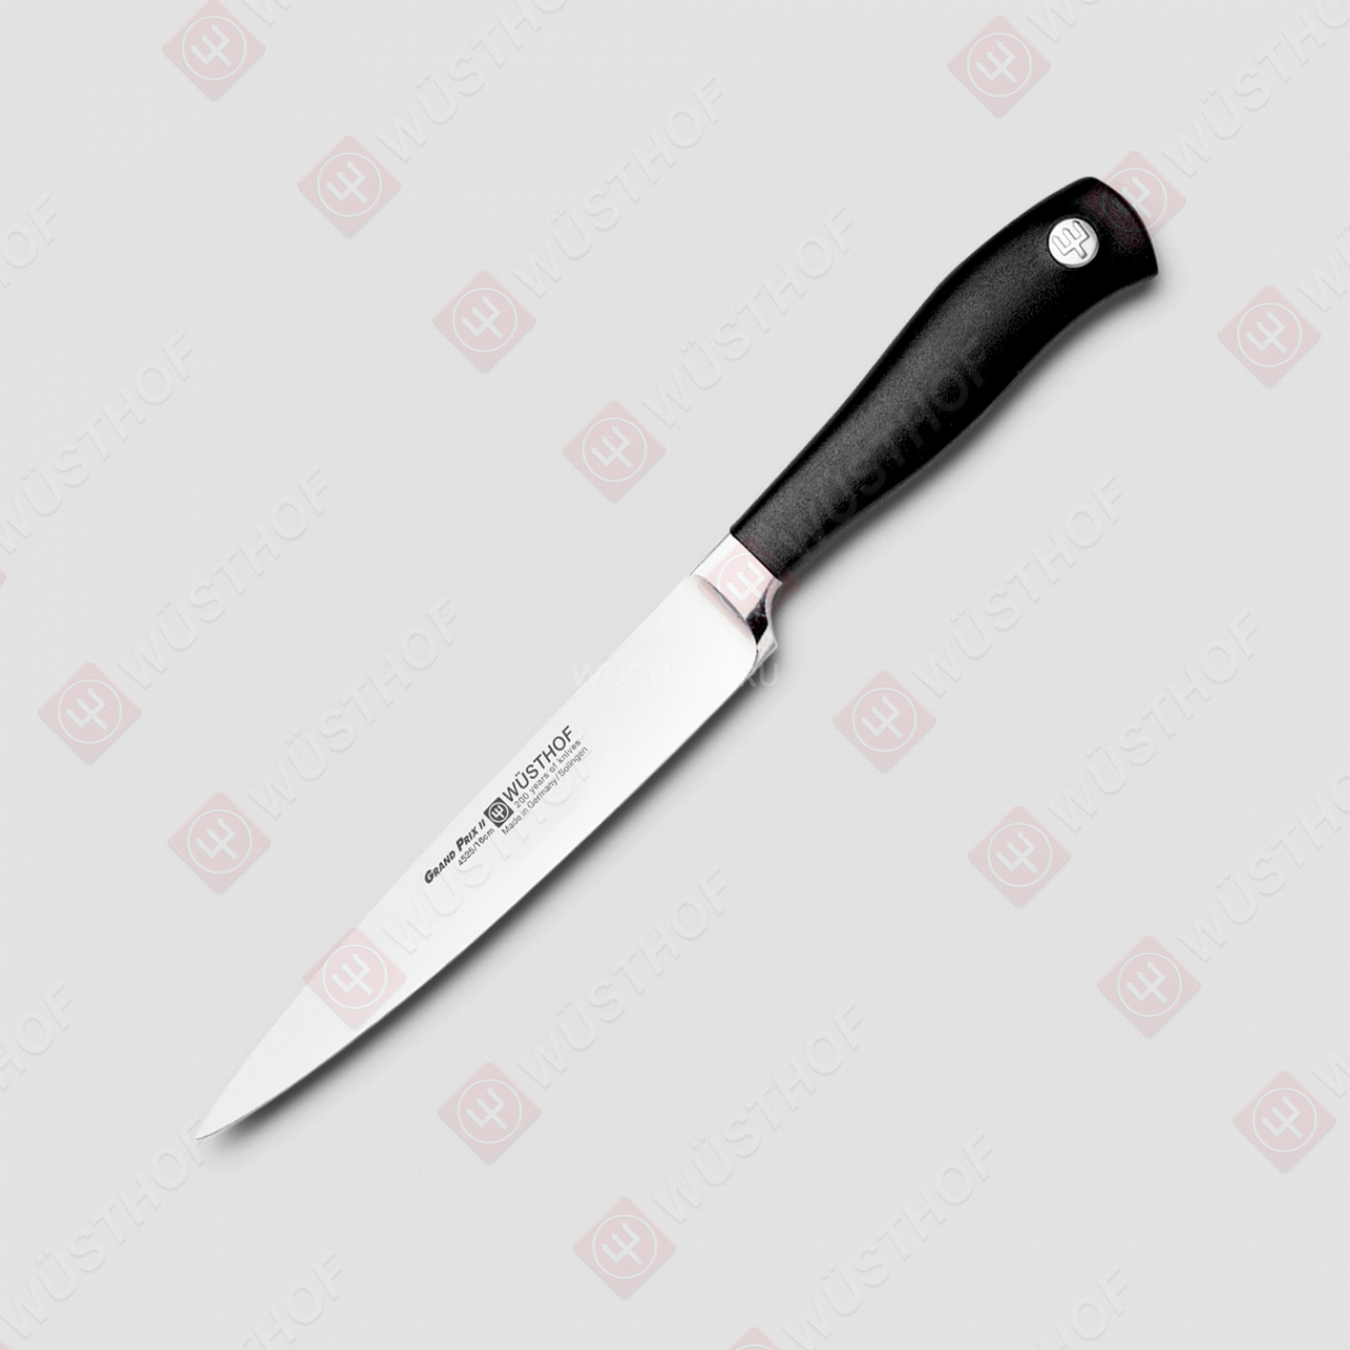 Нож кухонный для резки мяса 16 см, серия Grand Prix II, WUESTHOF, Золинген, Германия